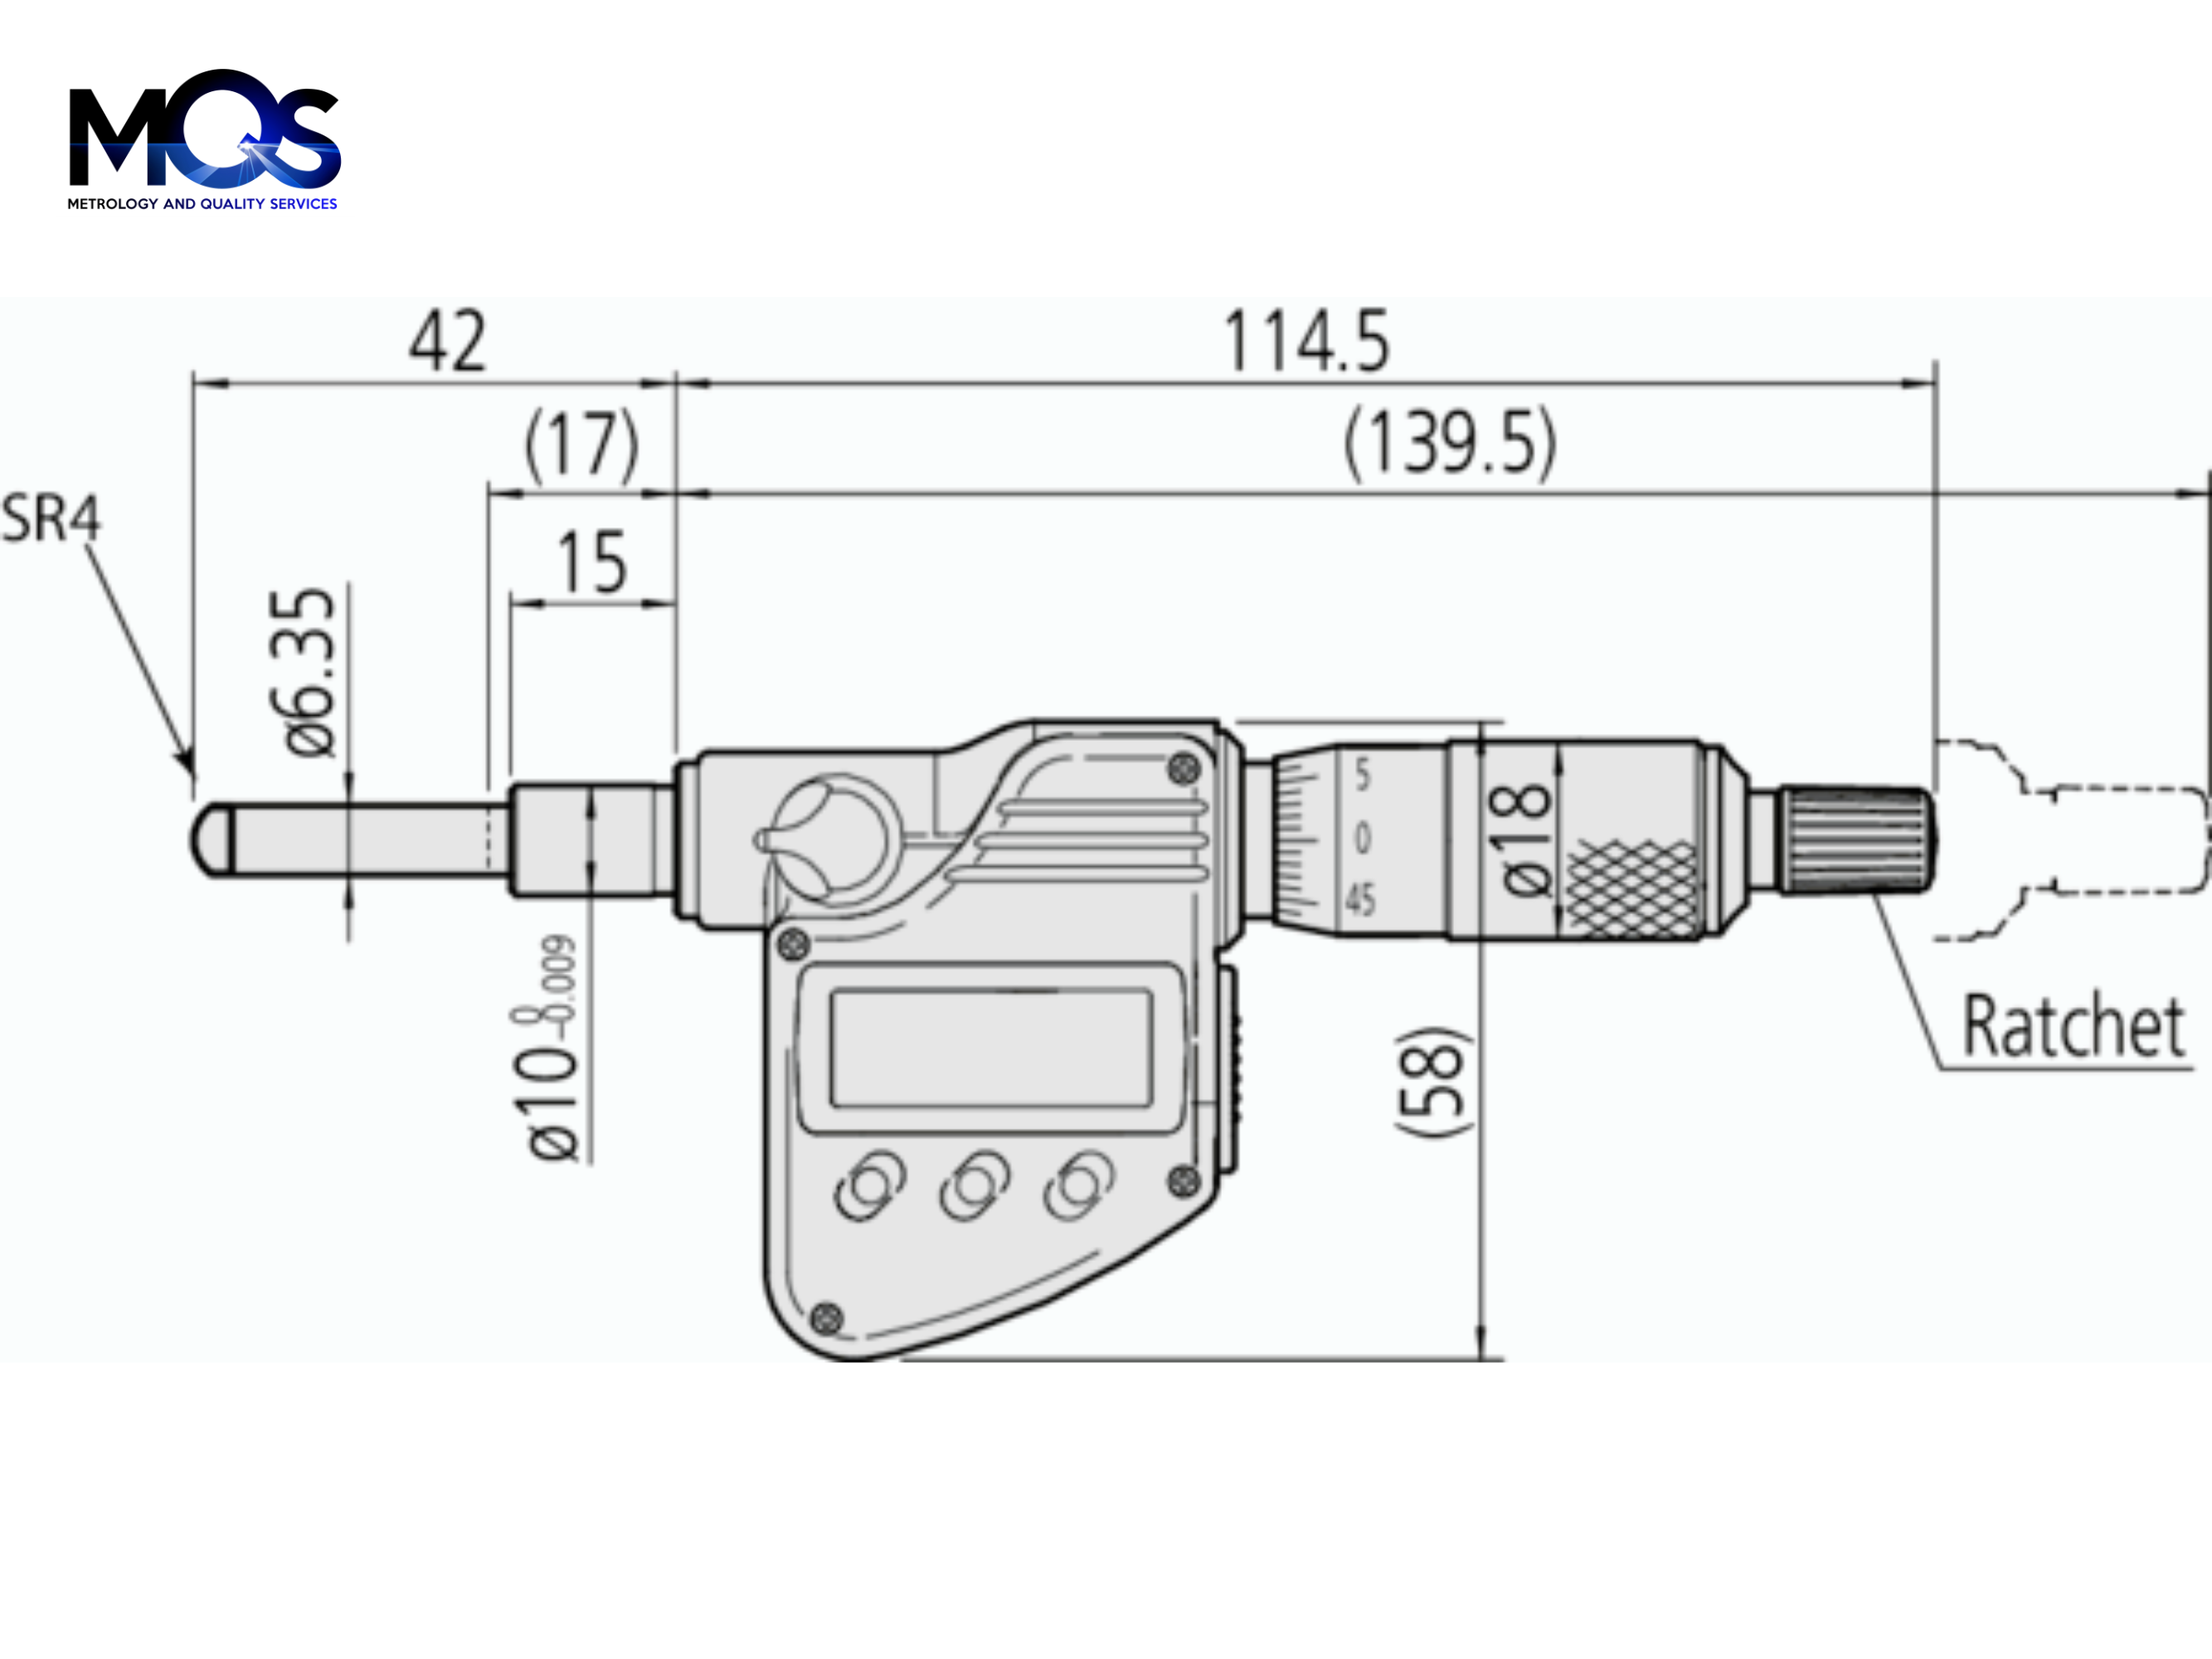 Digital Micrometer Head 0-25mm, SR4 Spindle, 10mm Plain Stem 350-253-30